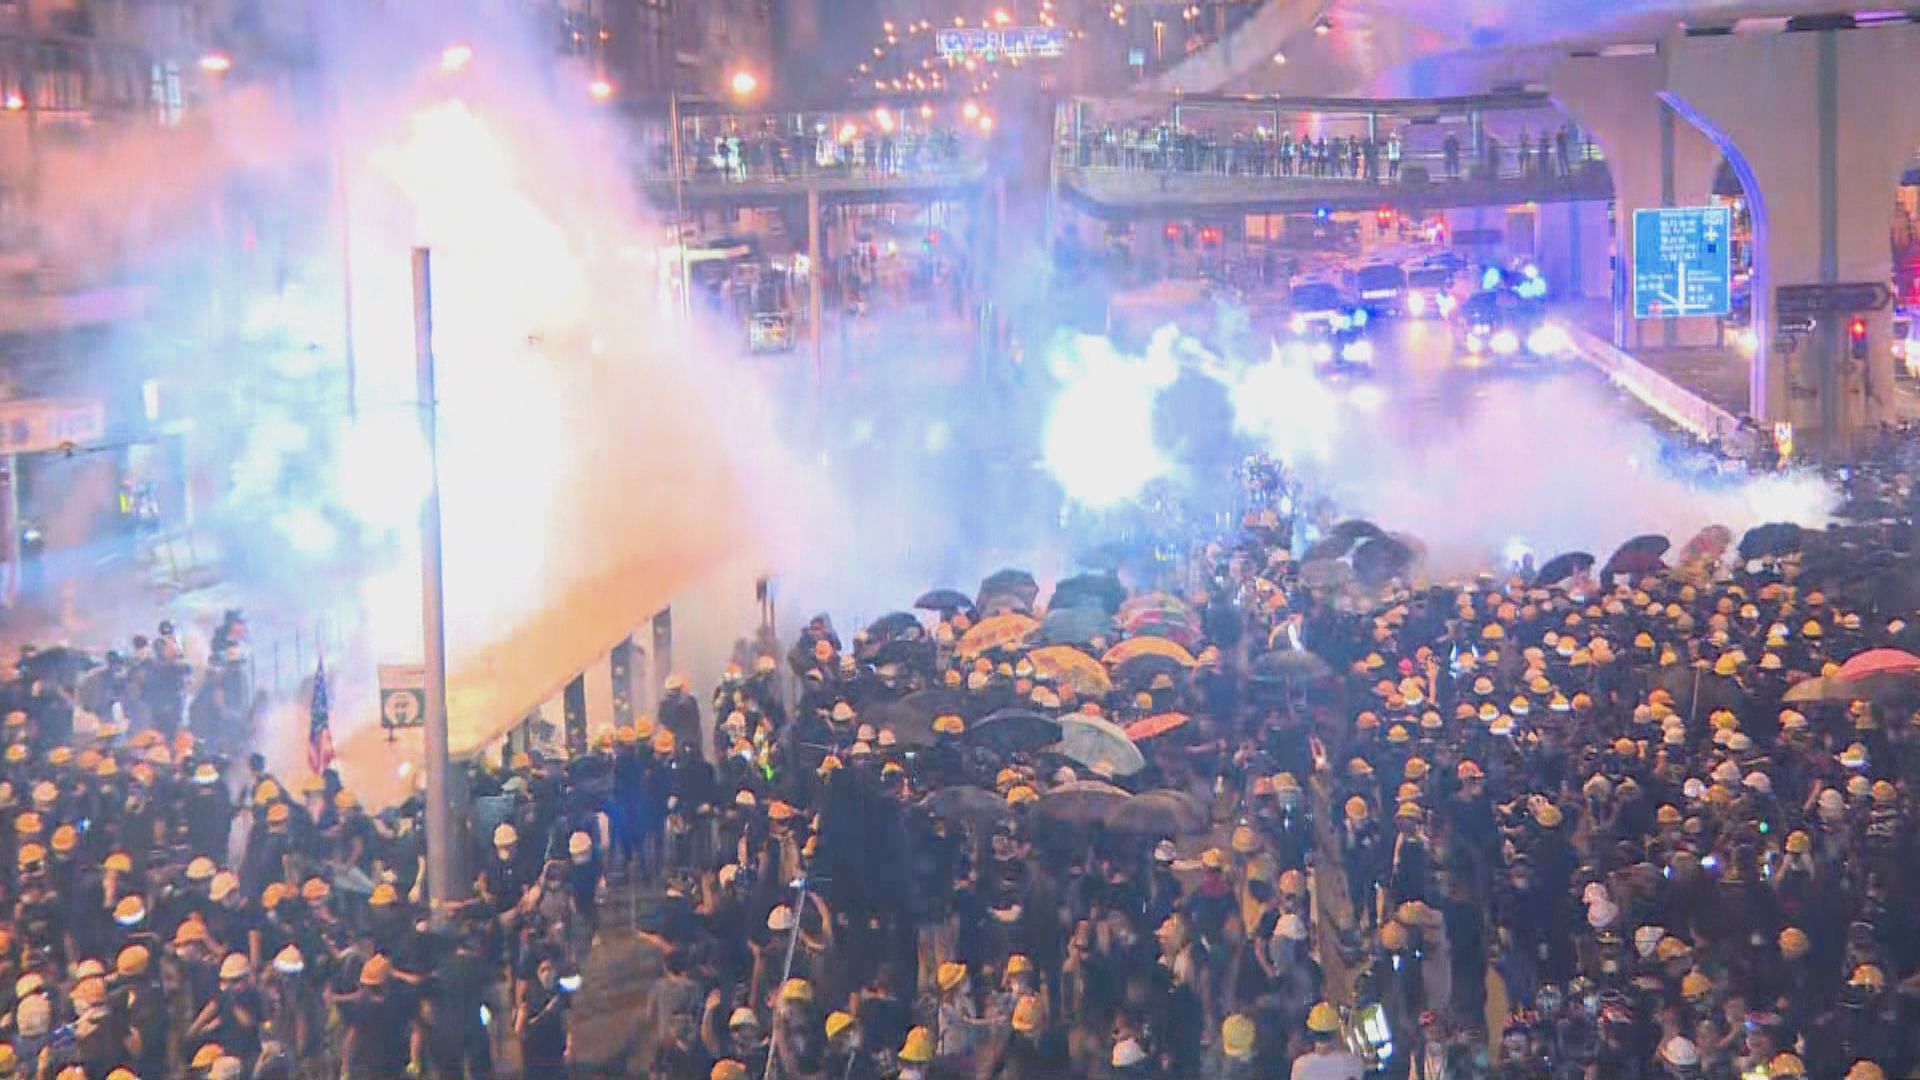 警方在上環施放催淚彈布袋彈等驅散示威者